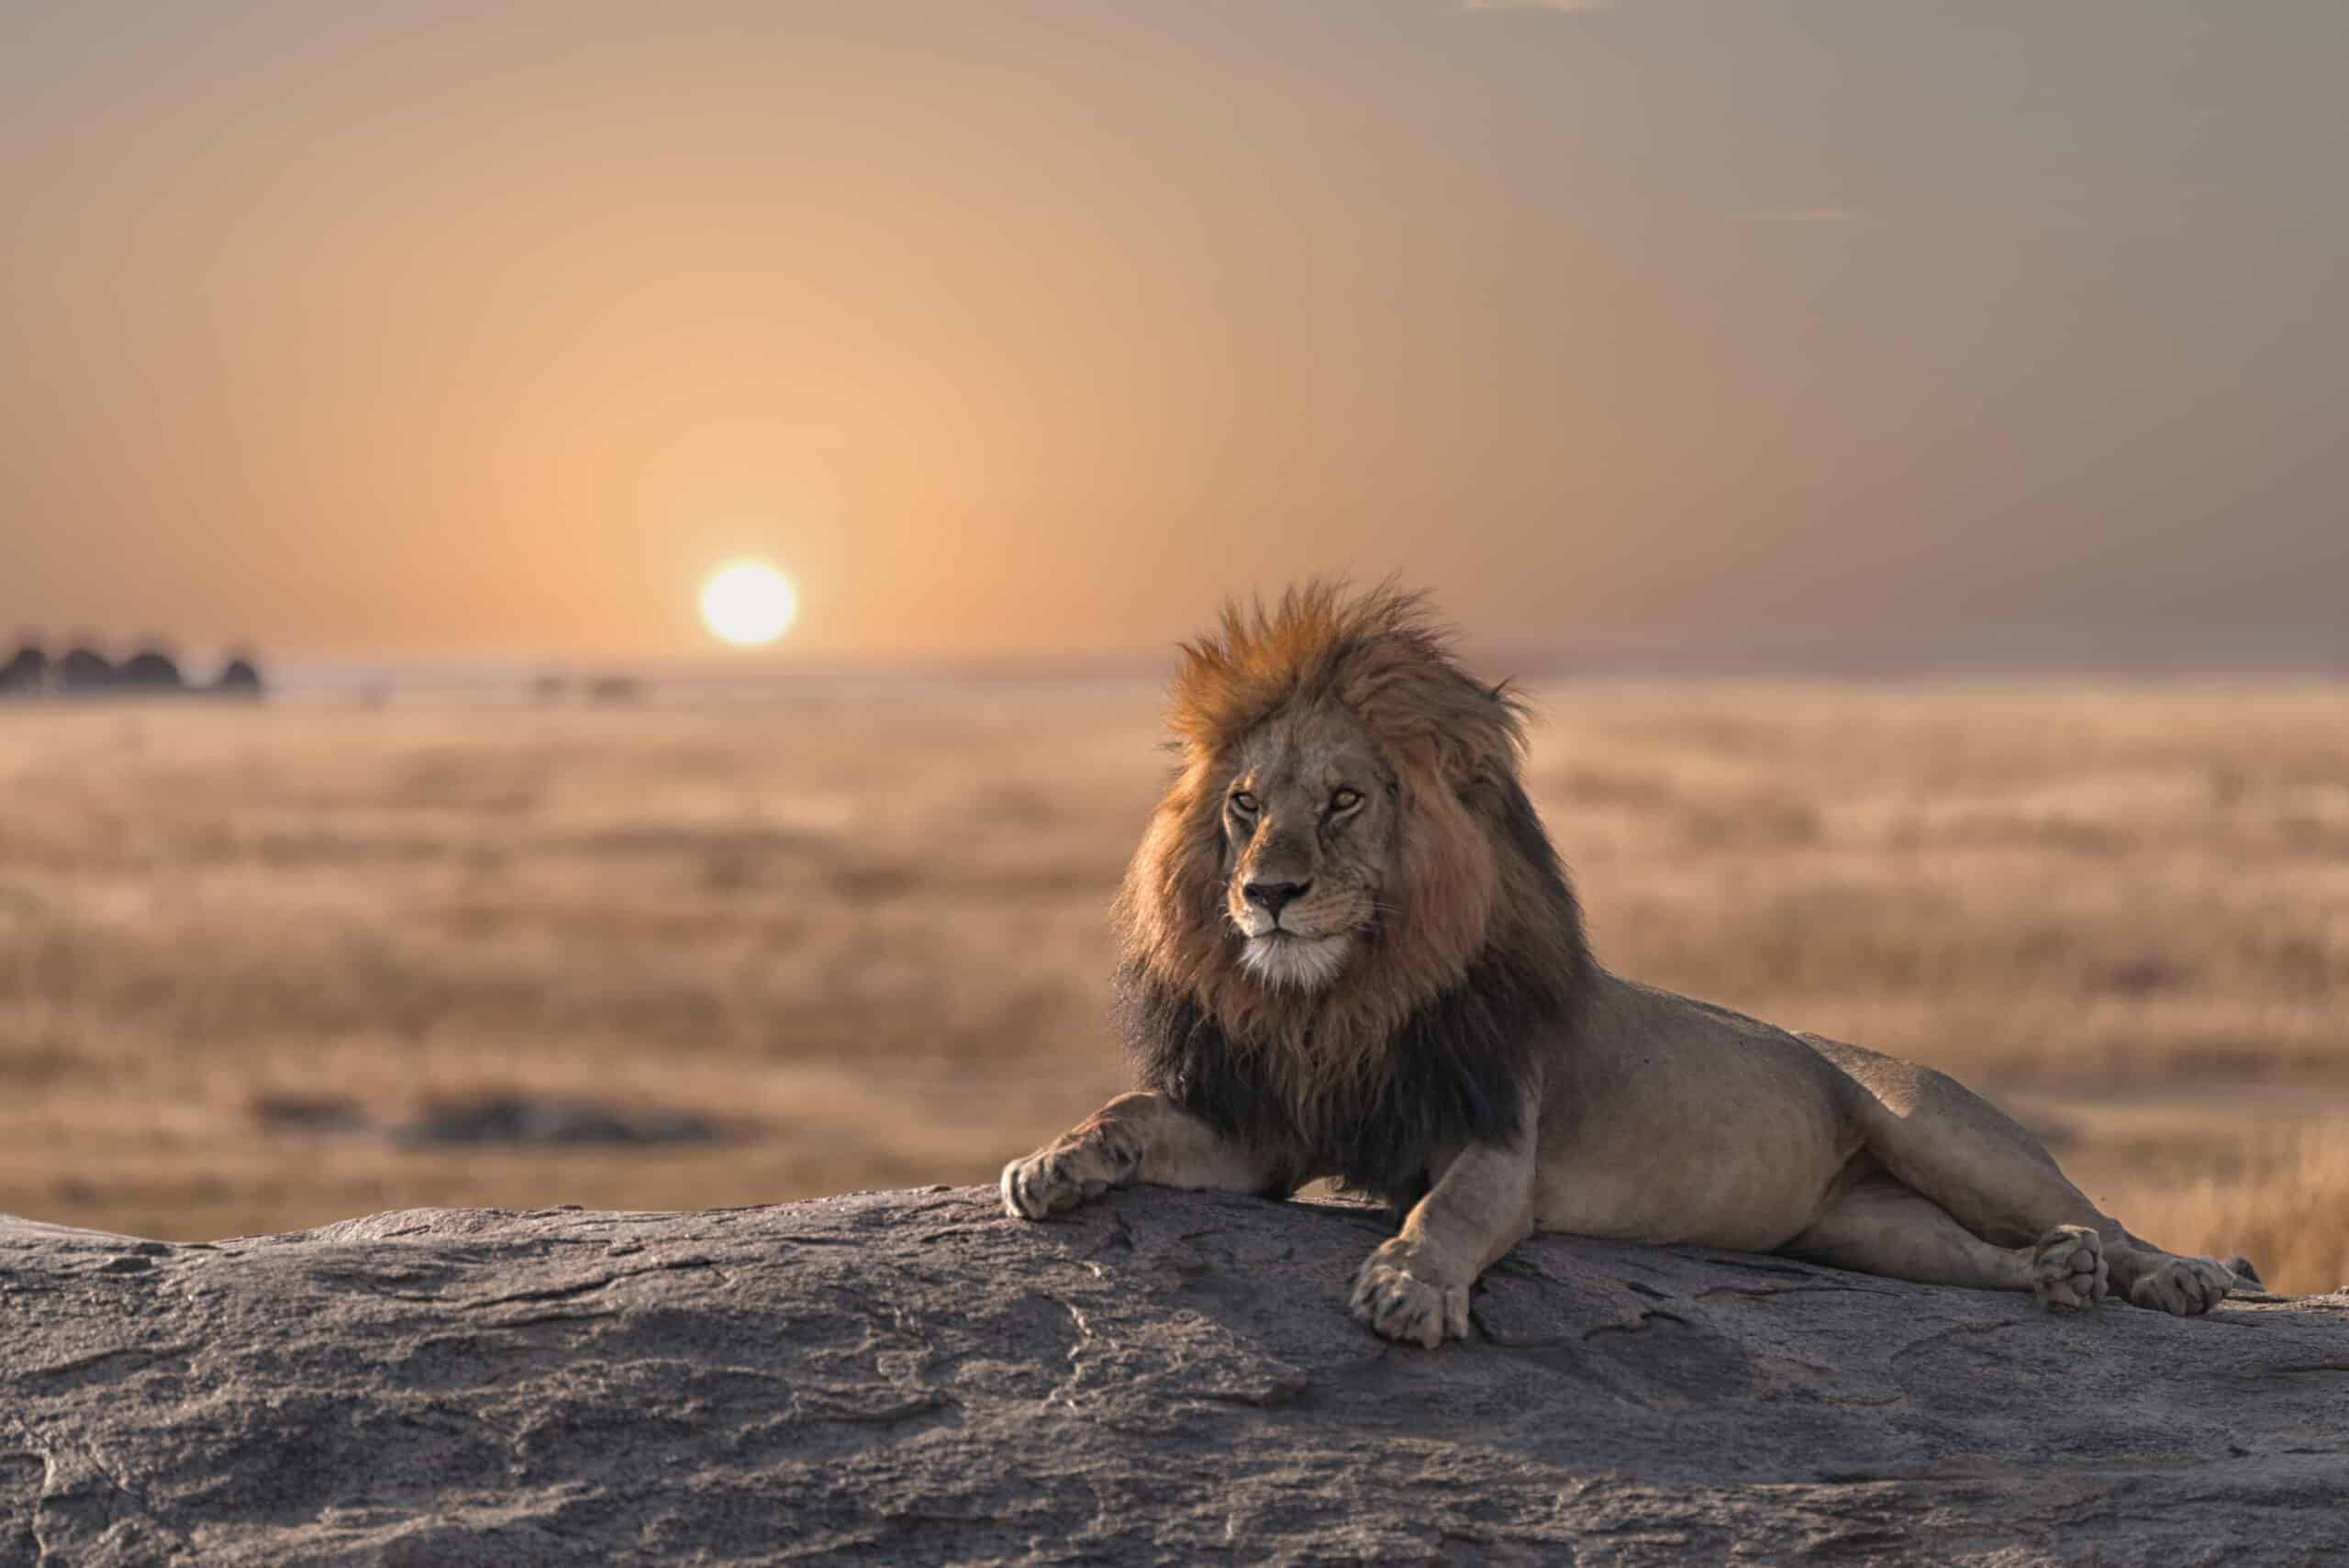 Tanzania - istock 864885156 1 scaled - bob jr photogenic lions serengeti story